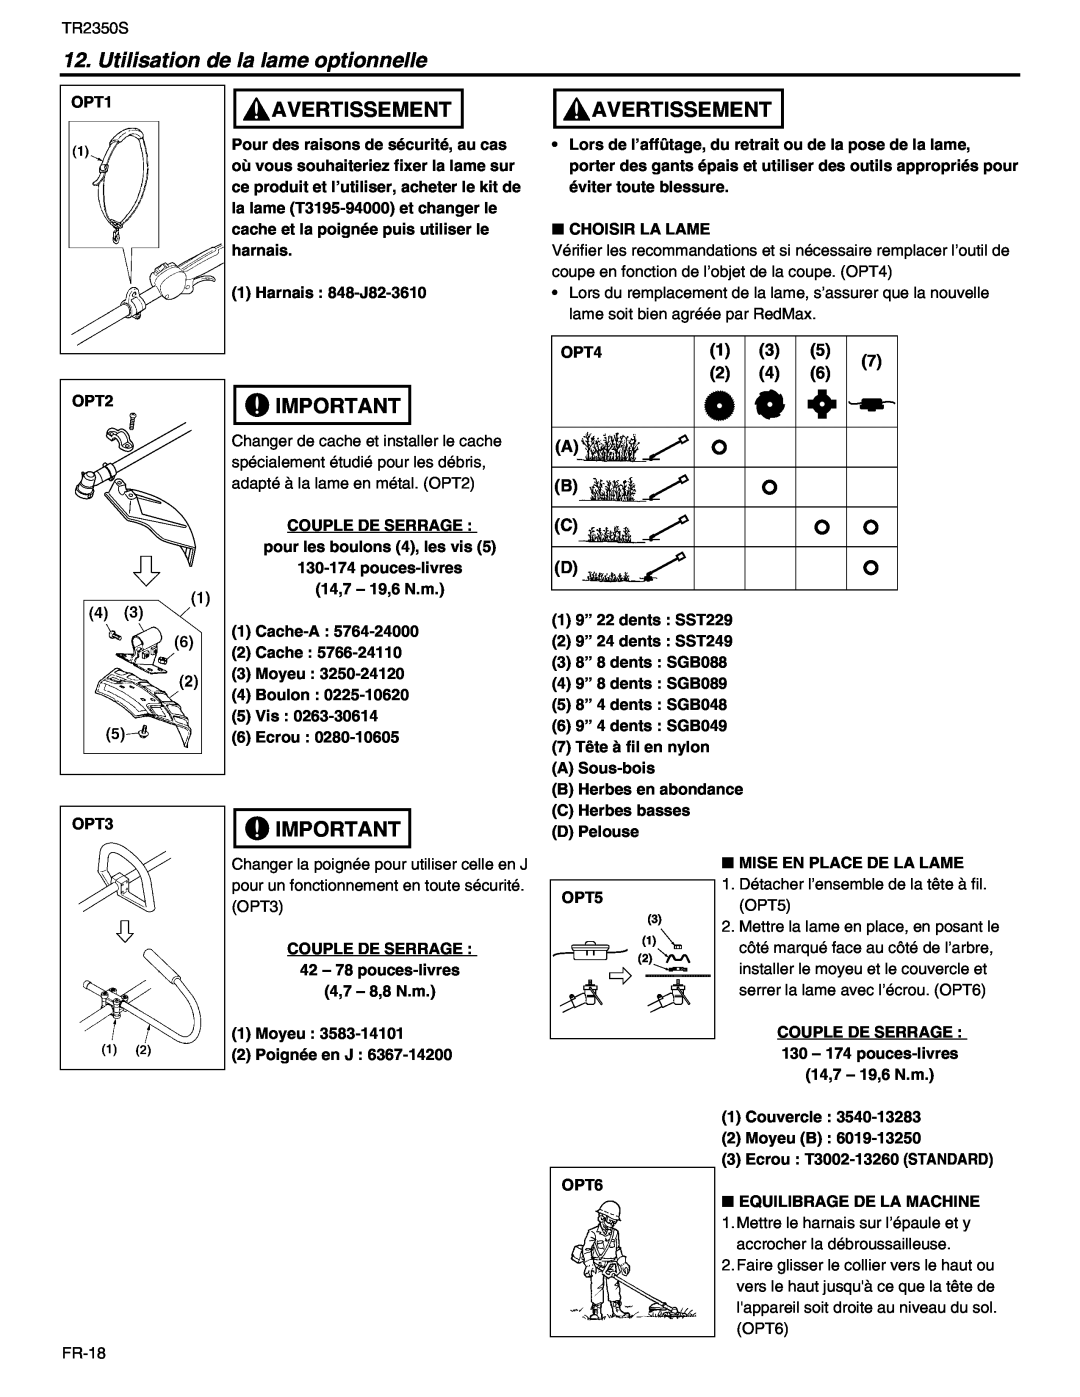 RedMax TR2350S manual Utilisation de la lame optionnelle, Avertissement 